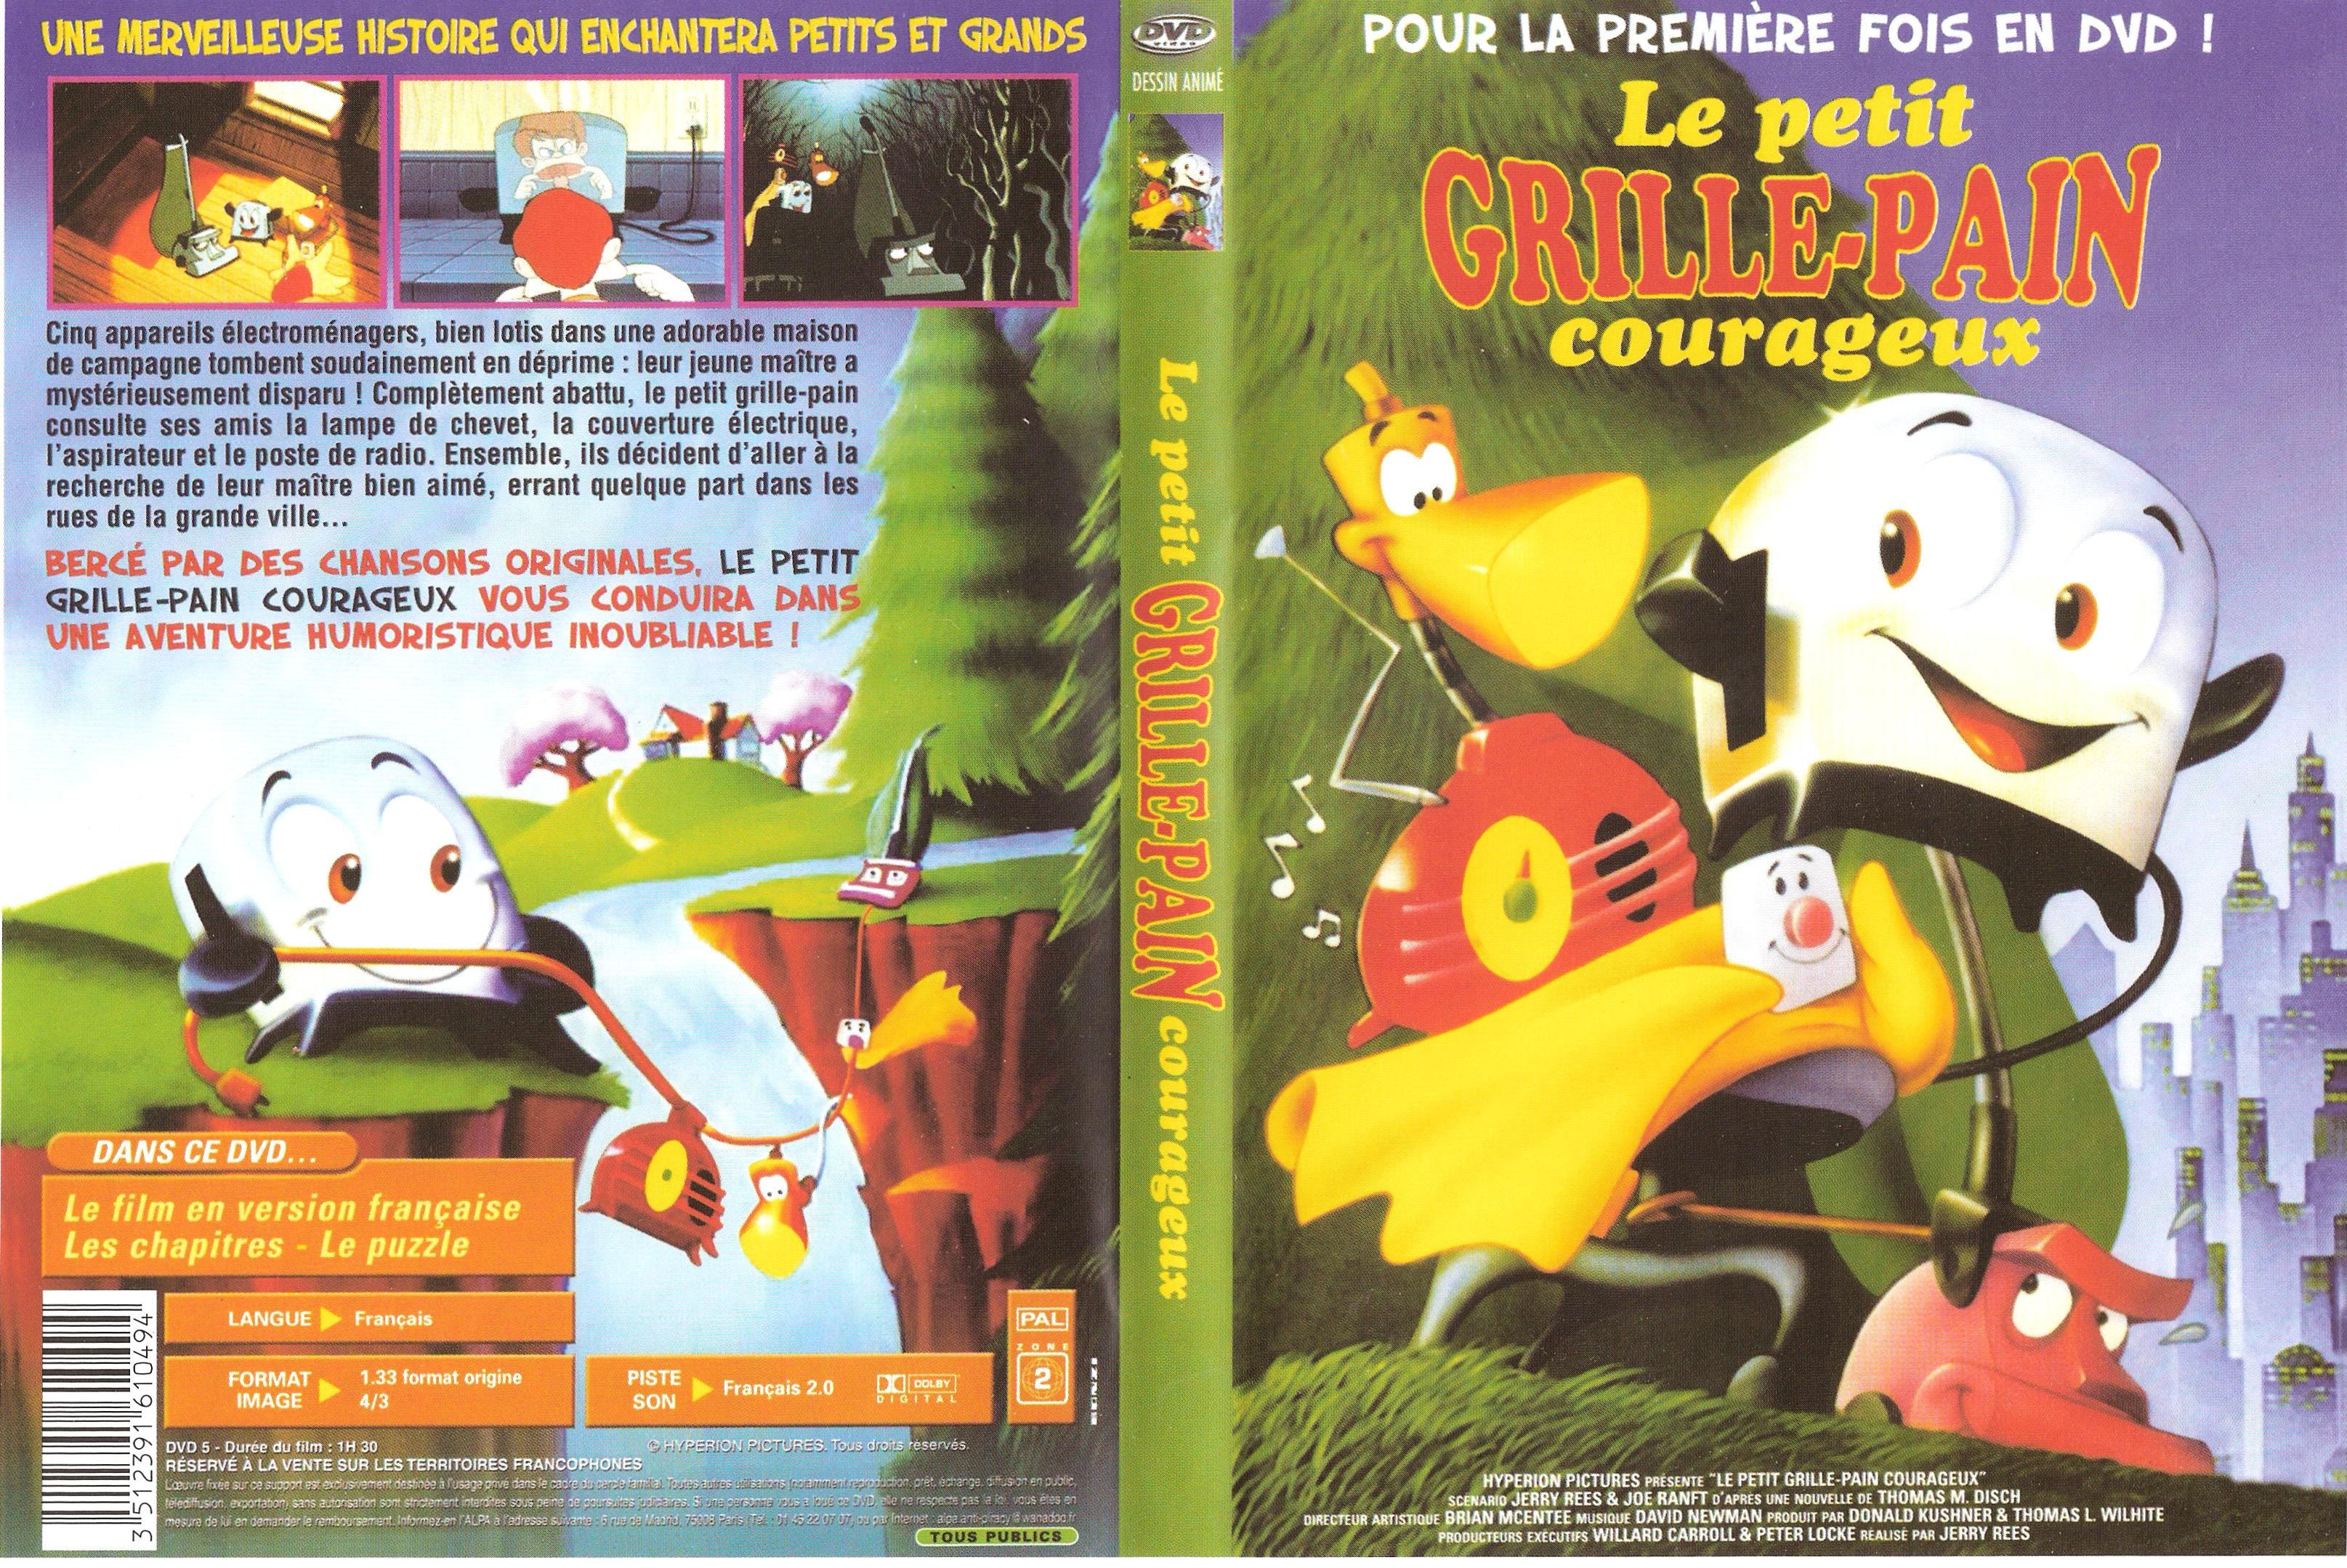 Le Petit Grille-pain courageux ‒ Films sur Google Play